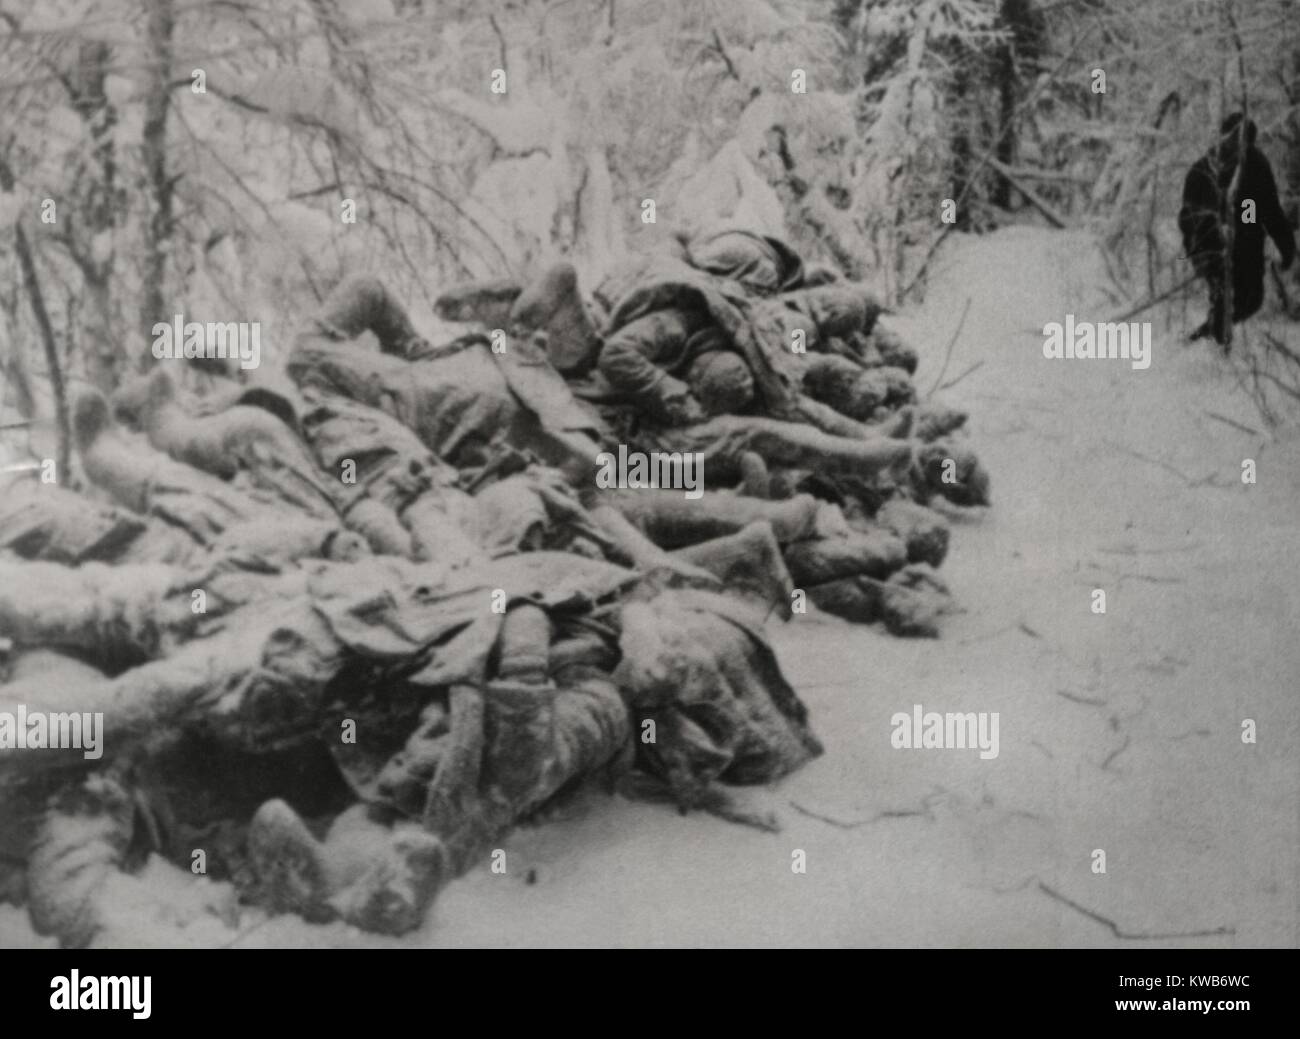 Gefrorene Körper der toten sowjetischen (Russischen) Soldaten im russisch-finnischen Krieg getötet. Ca. Nov. 1939 - März 1940. Weltkrieg 2. (BSLOC 2014 8 56) Stockfoto